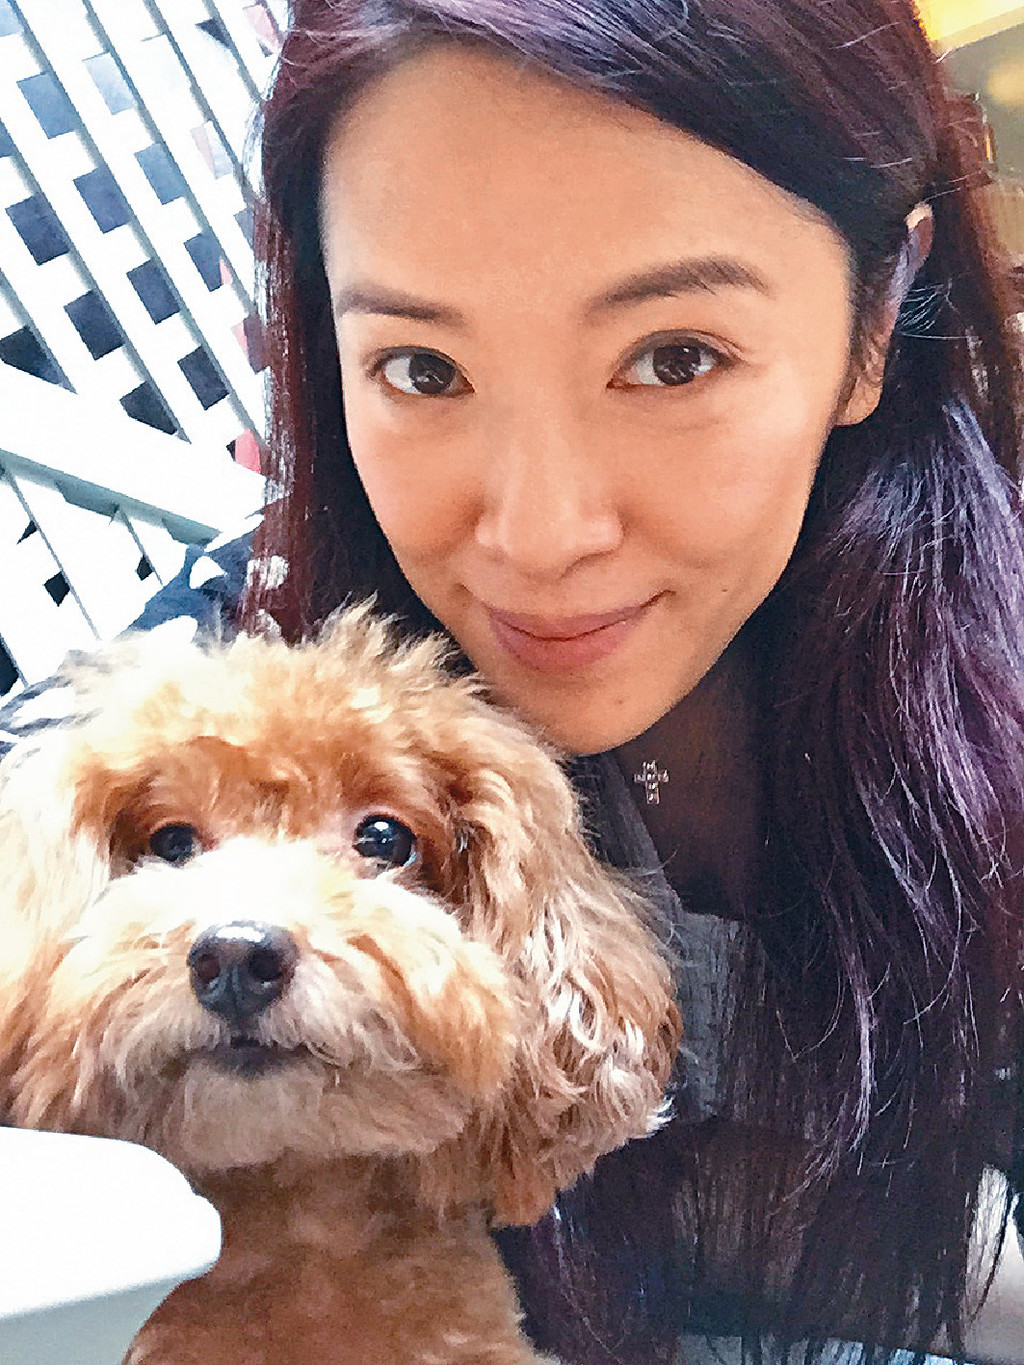 8. 向海岚 近年复出的向海岚，在9月为TVB在《We Miss Hong Kong STAY-cation晋级赛》担任导师，不少人大赞她依然漂亮。早前她在网上公开抱狗狗靓相，以素颜出镜的她，虽然已经48岁，但看起来依然有种自然美。